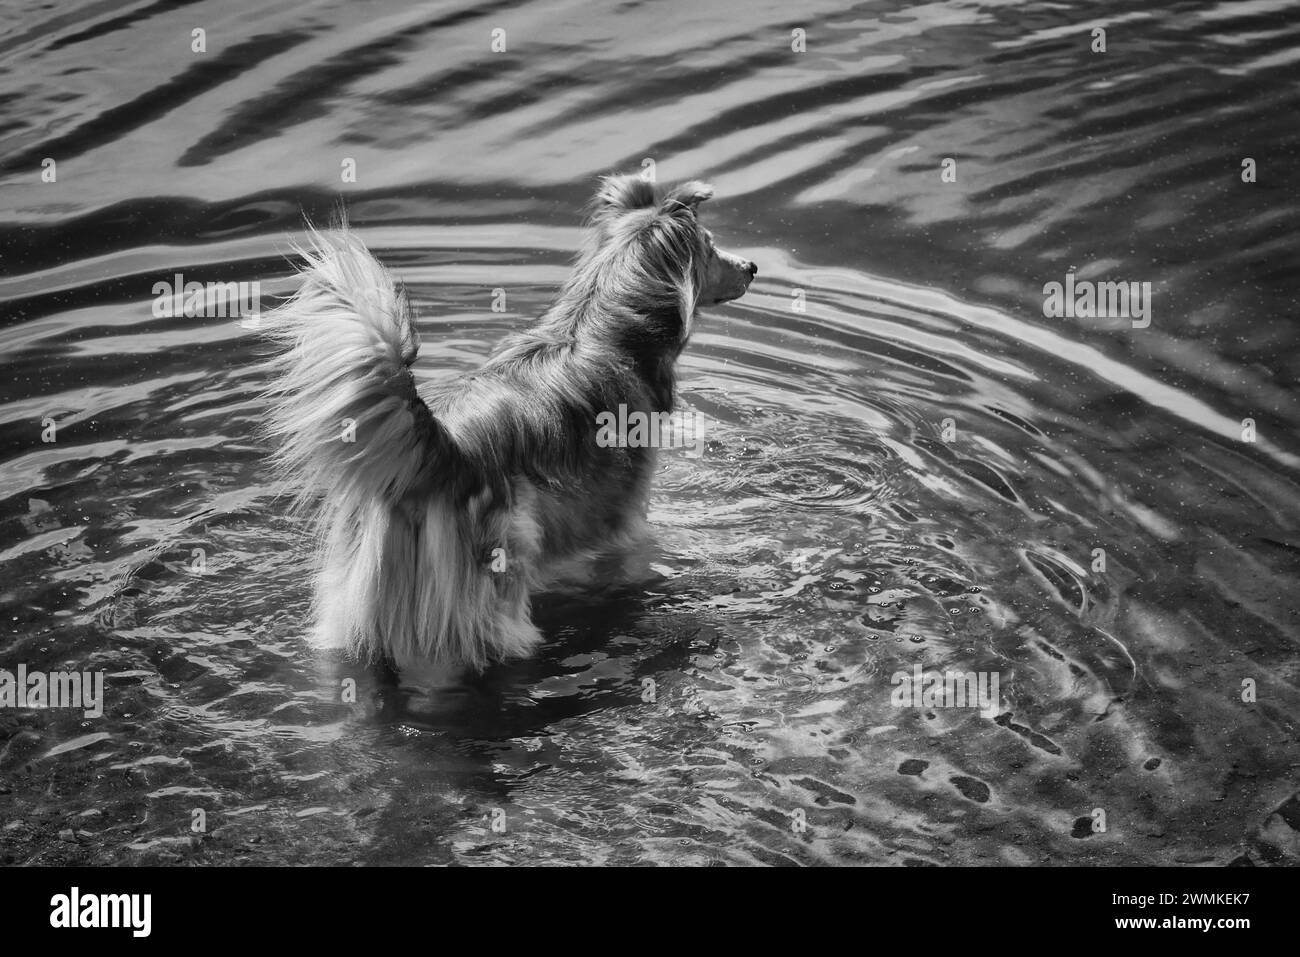 Il cane di razza mista si trova nelle acque poco profonde vicino al bordo del lago, creando increspature concentriche nell'acqua Foto Stock